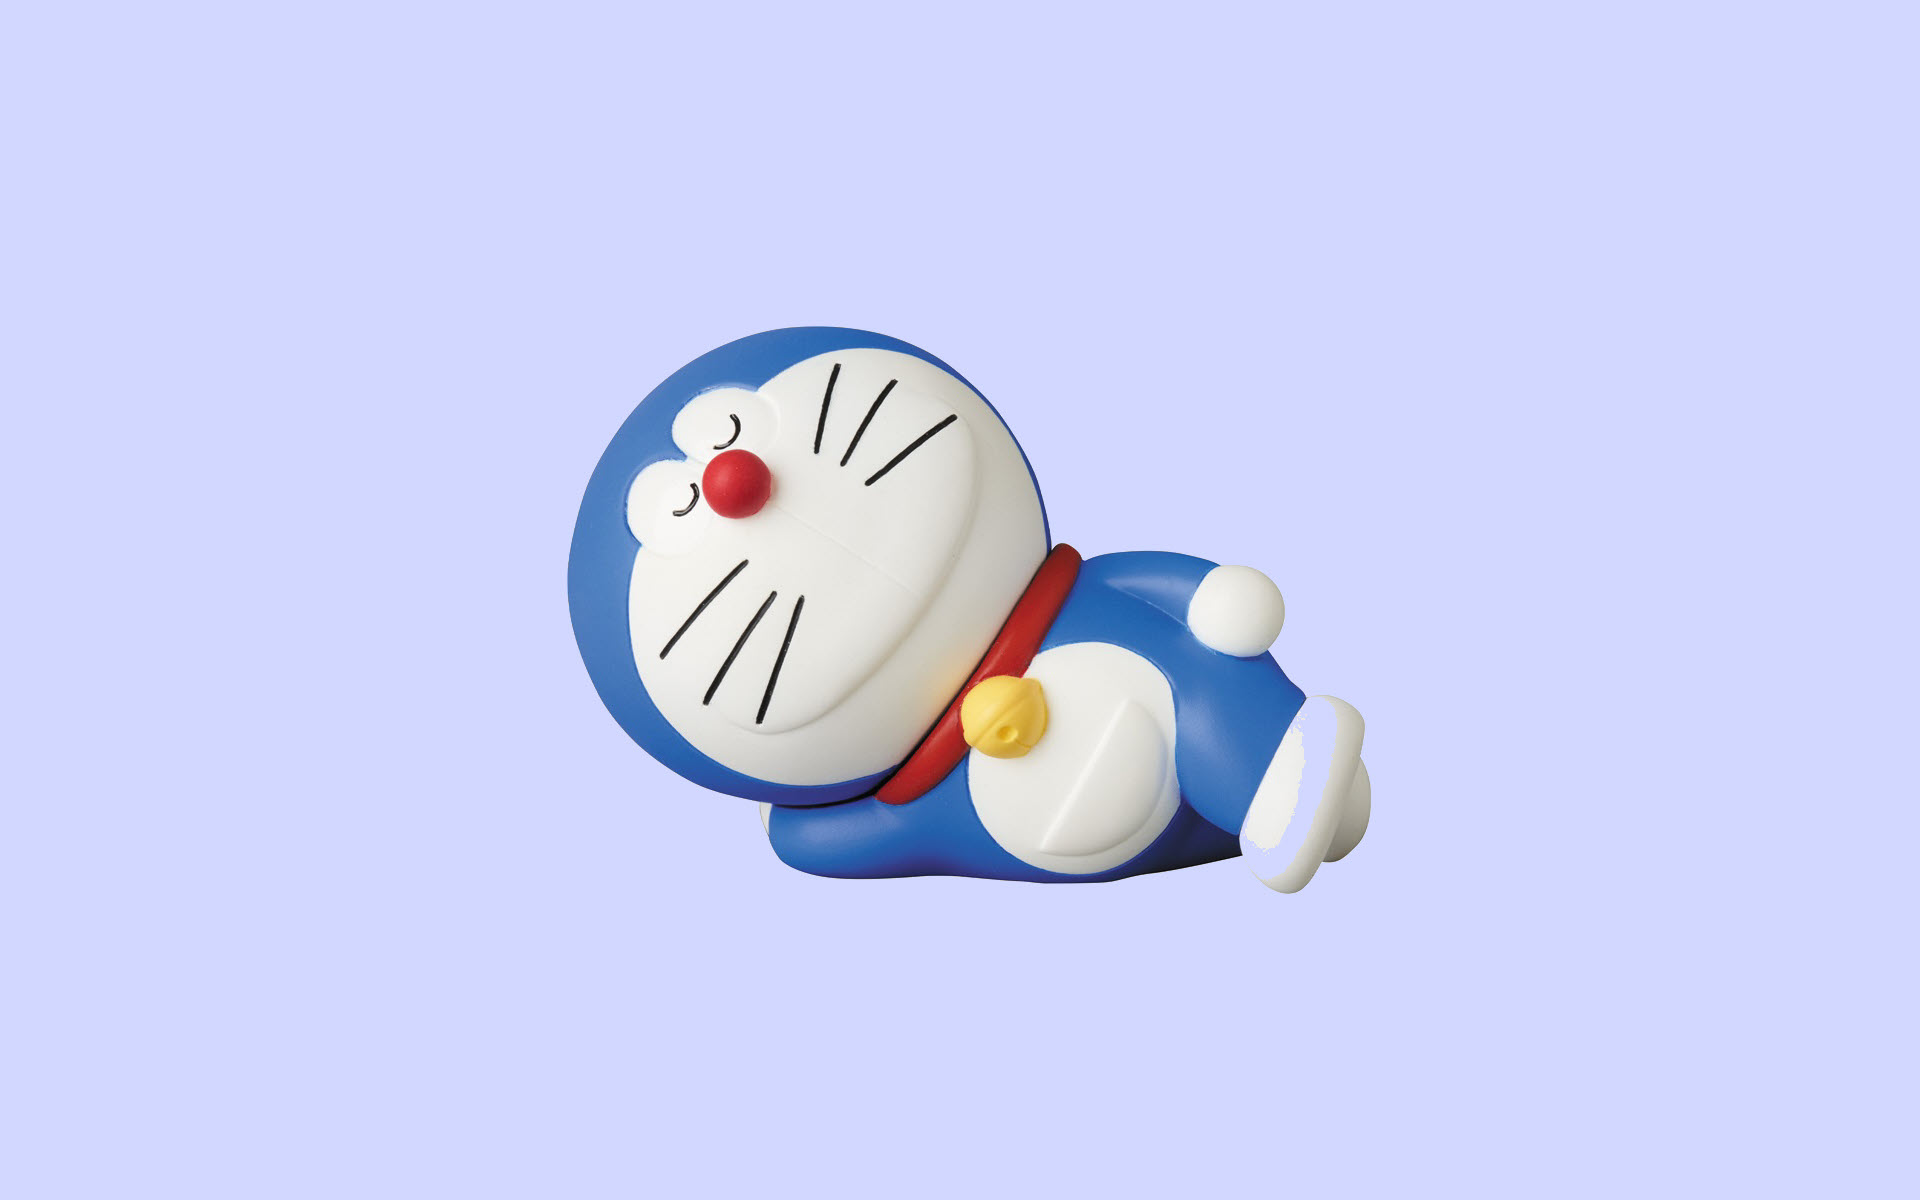 Tổng hợp Doreamon Hình Nền Doraemon giá rẻ bán chạy tháng 72023  BeeCost